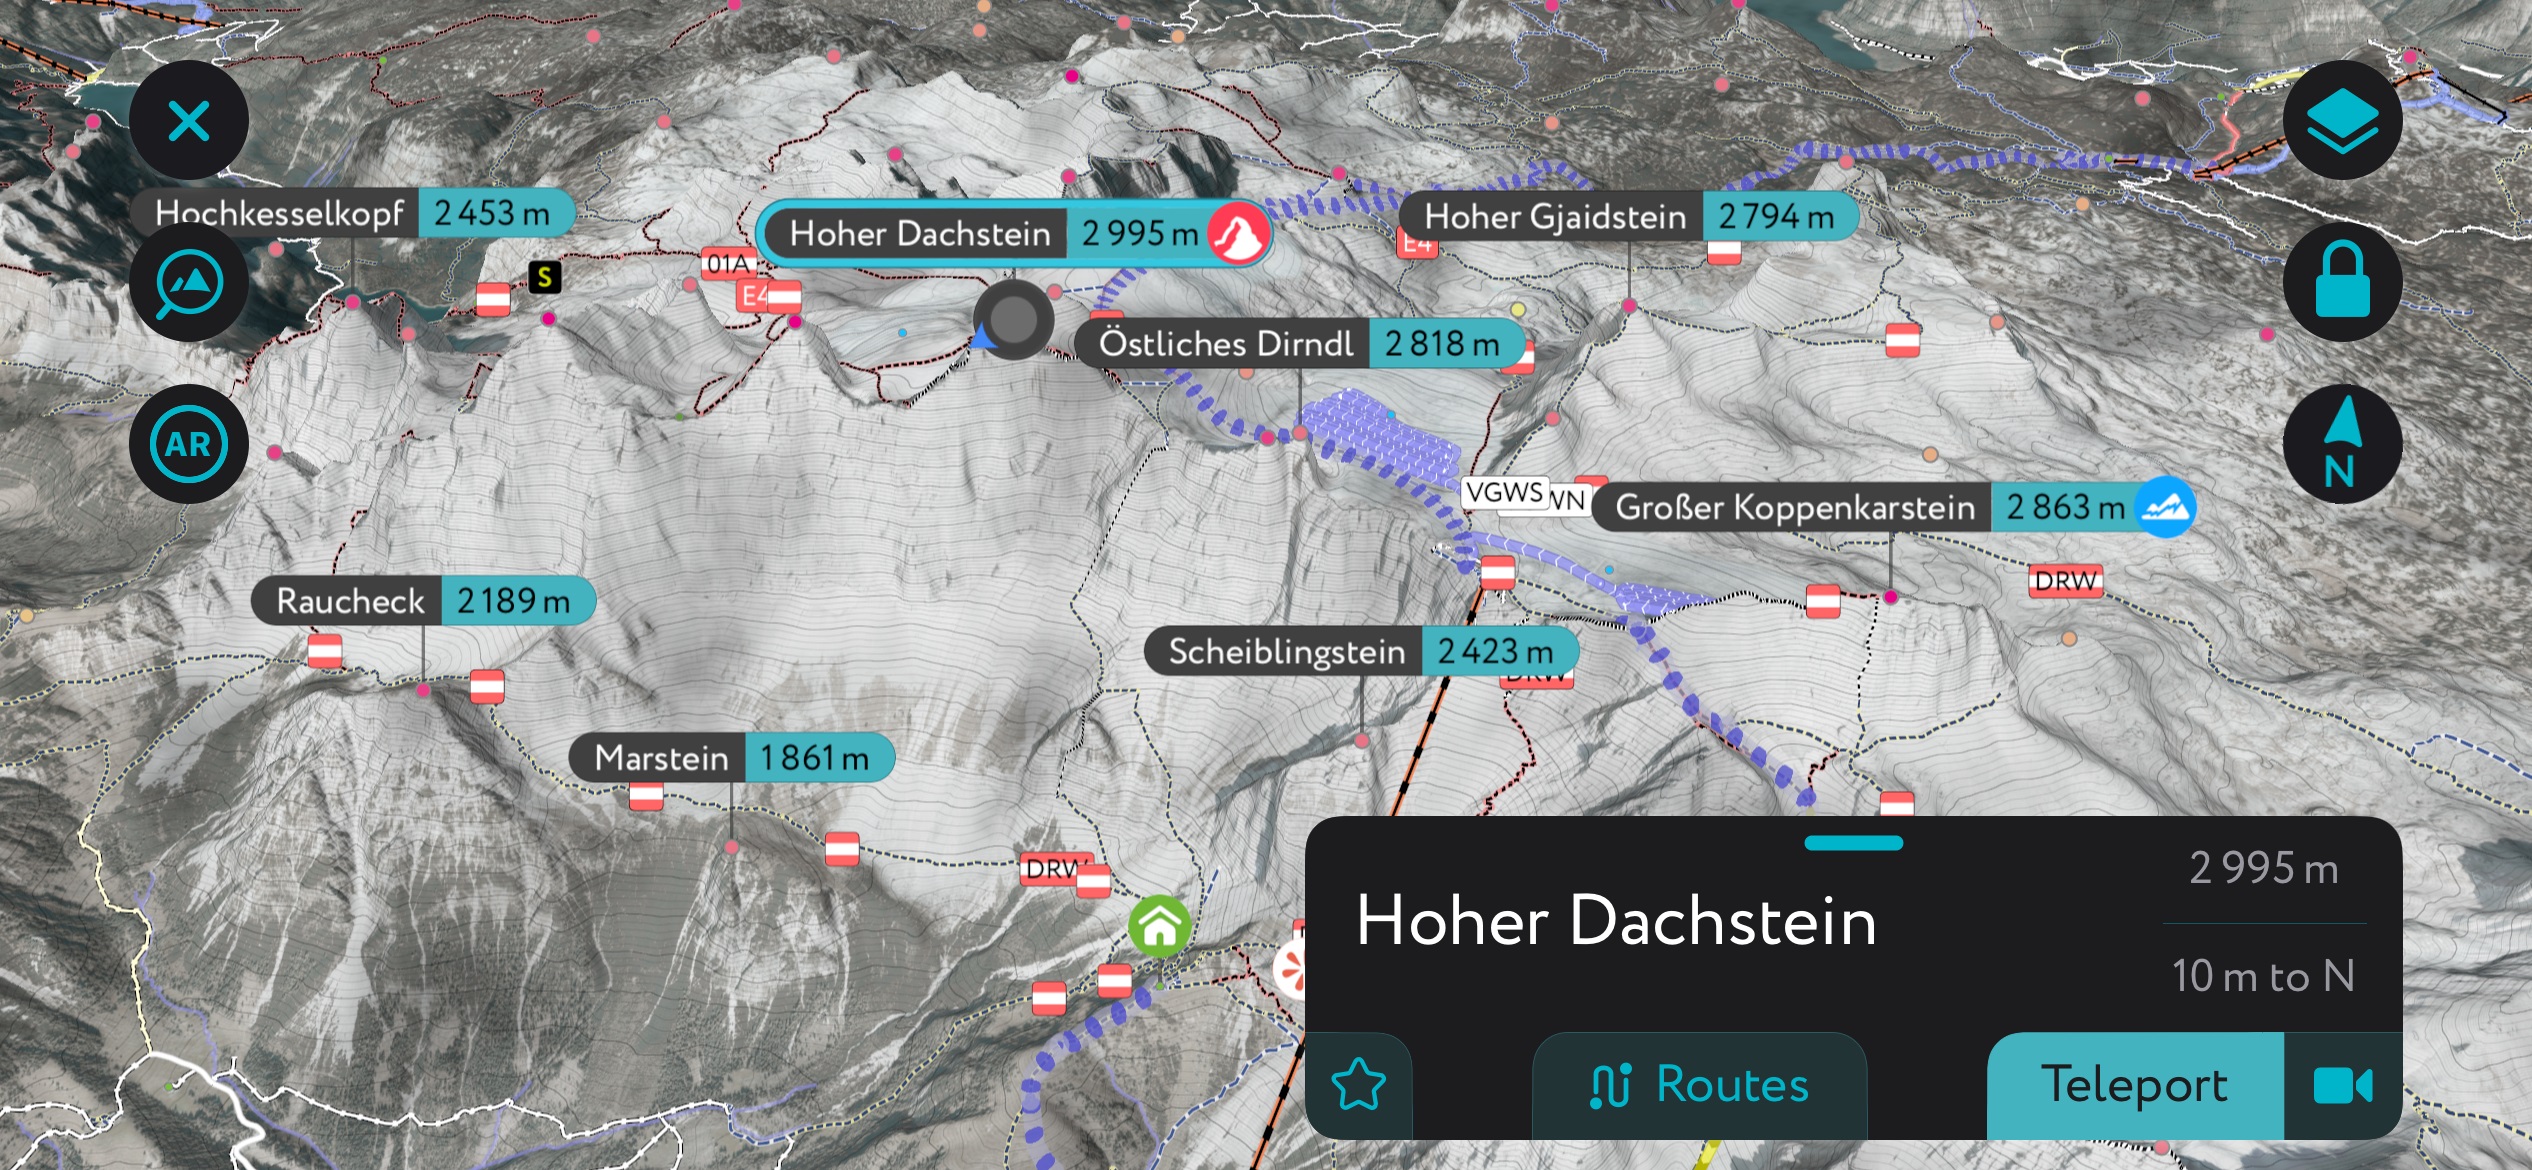 Dachstein Massif using PeakVisor’s mobile app. Salzkammergut Upper Austria